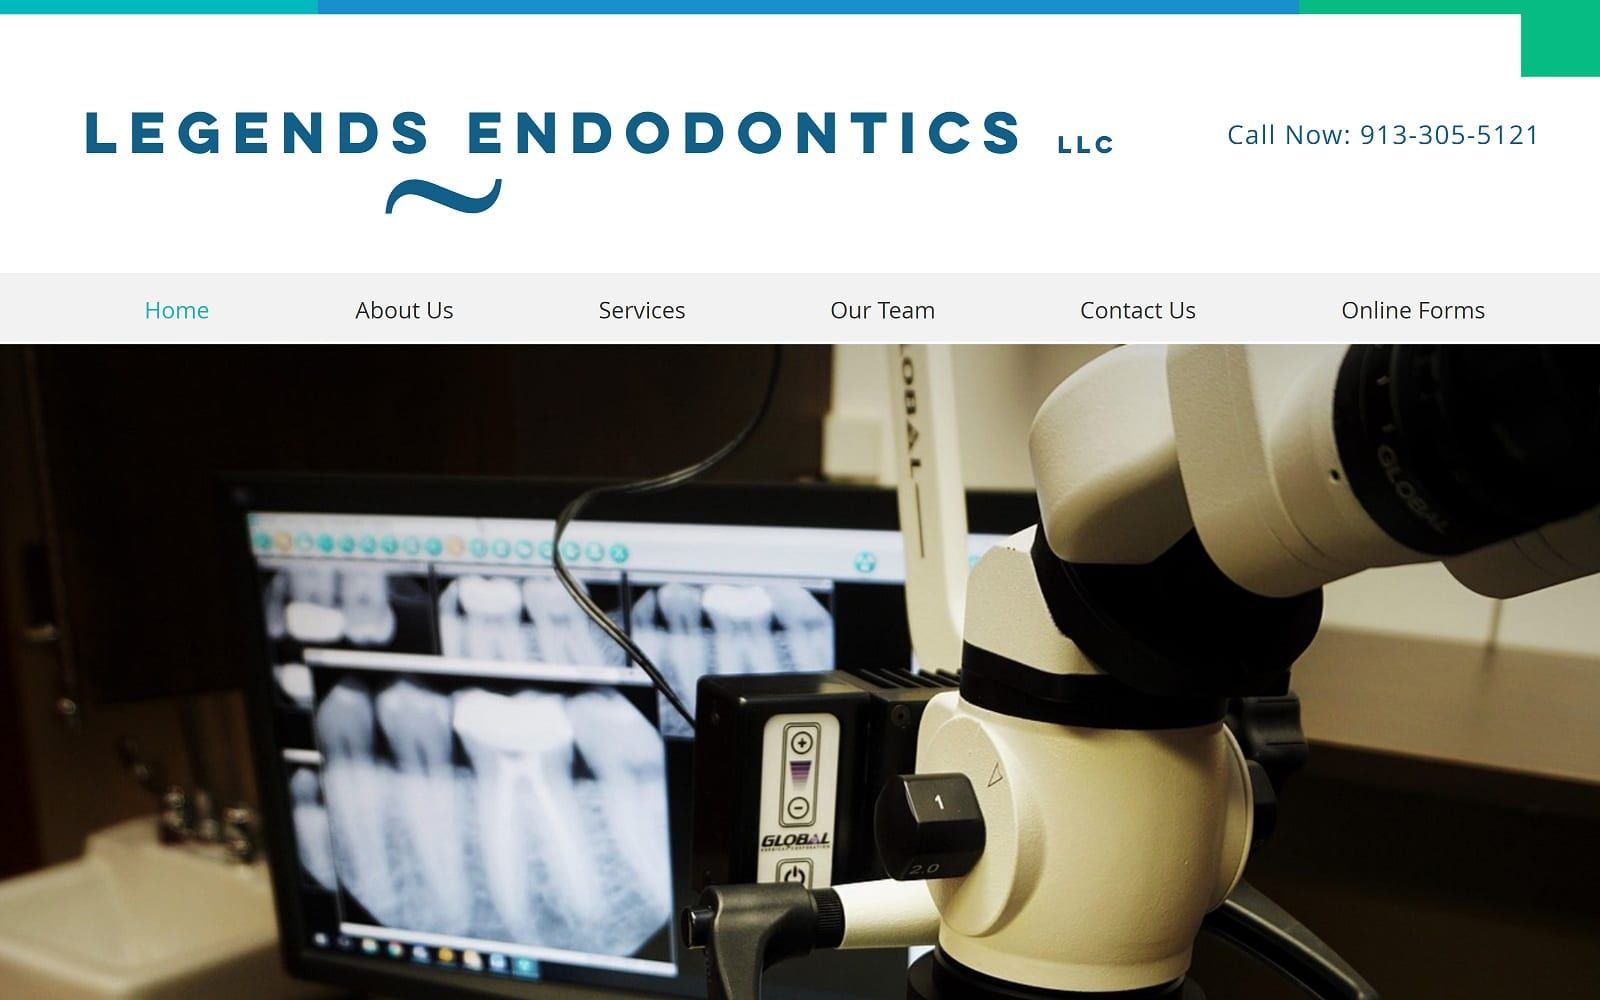 The screenshot of legends endodontics legendsendo. Com website